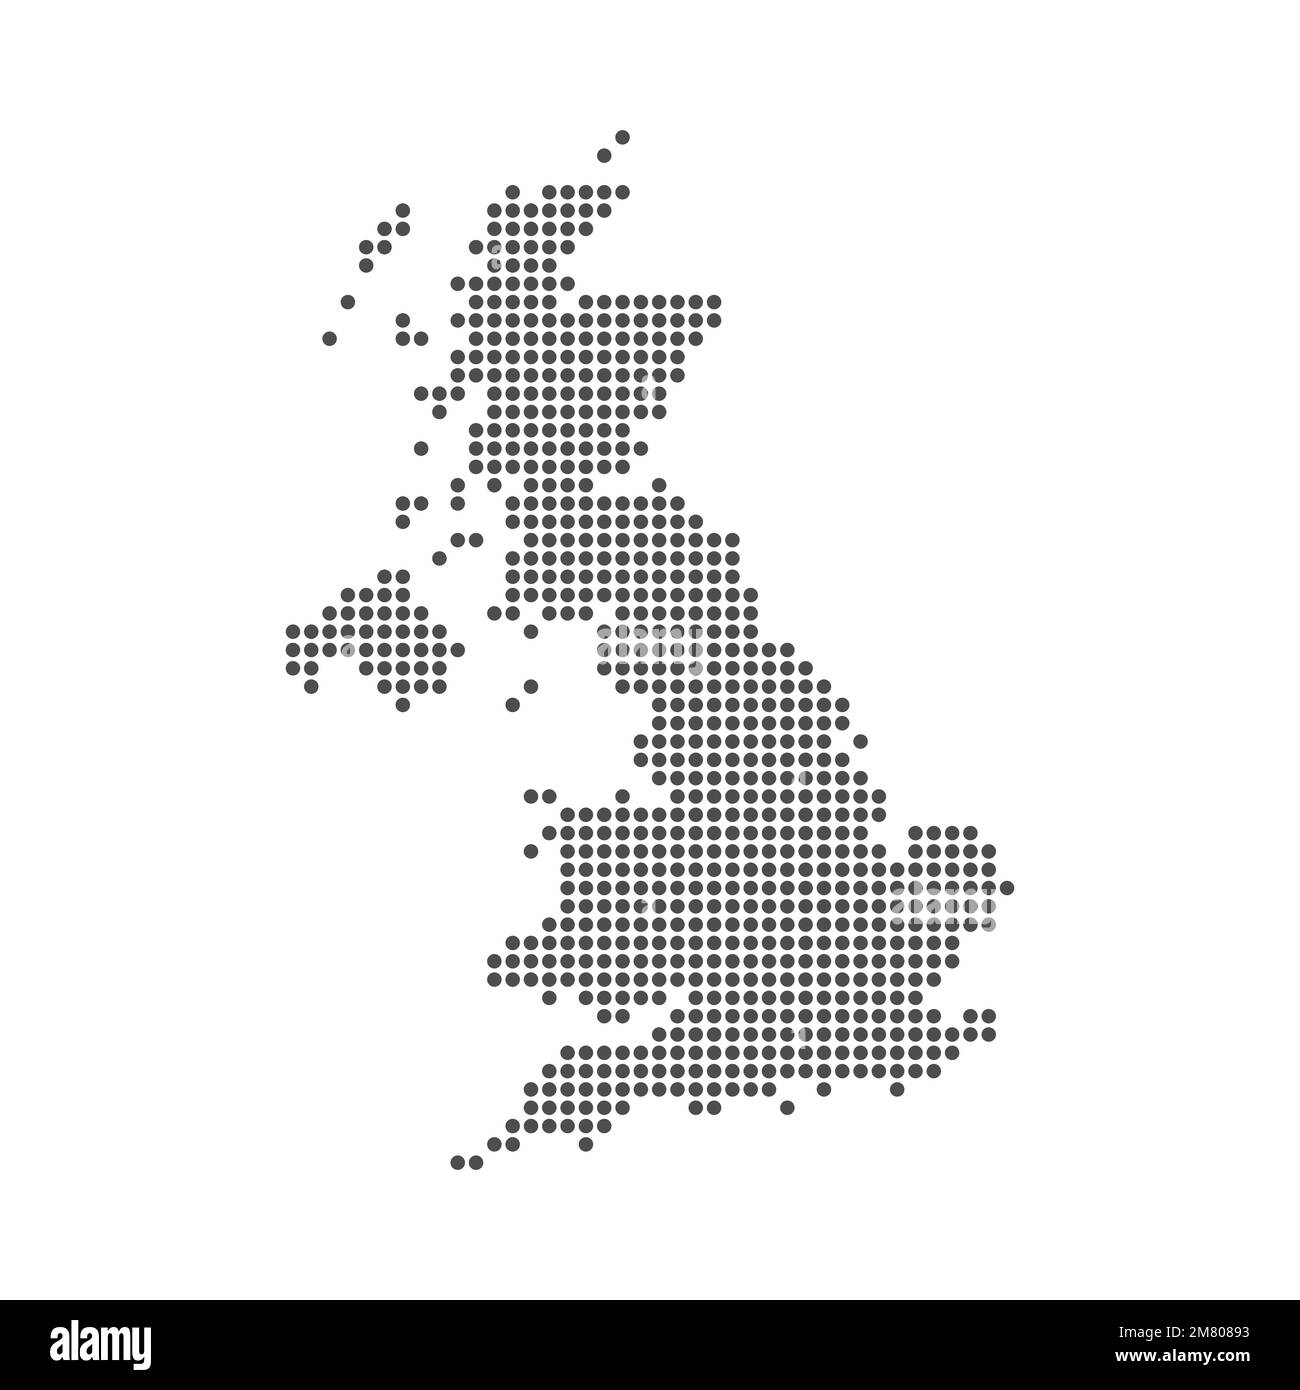 Pixelmosaikkarte von Großbritannien. Halbtondesign. Vektordarstellung. Eps 10. Stock Vektor